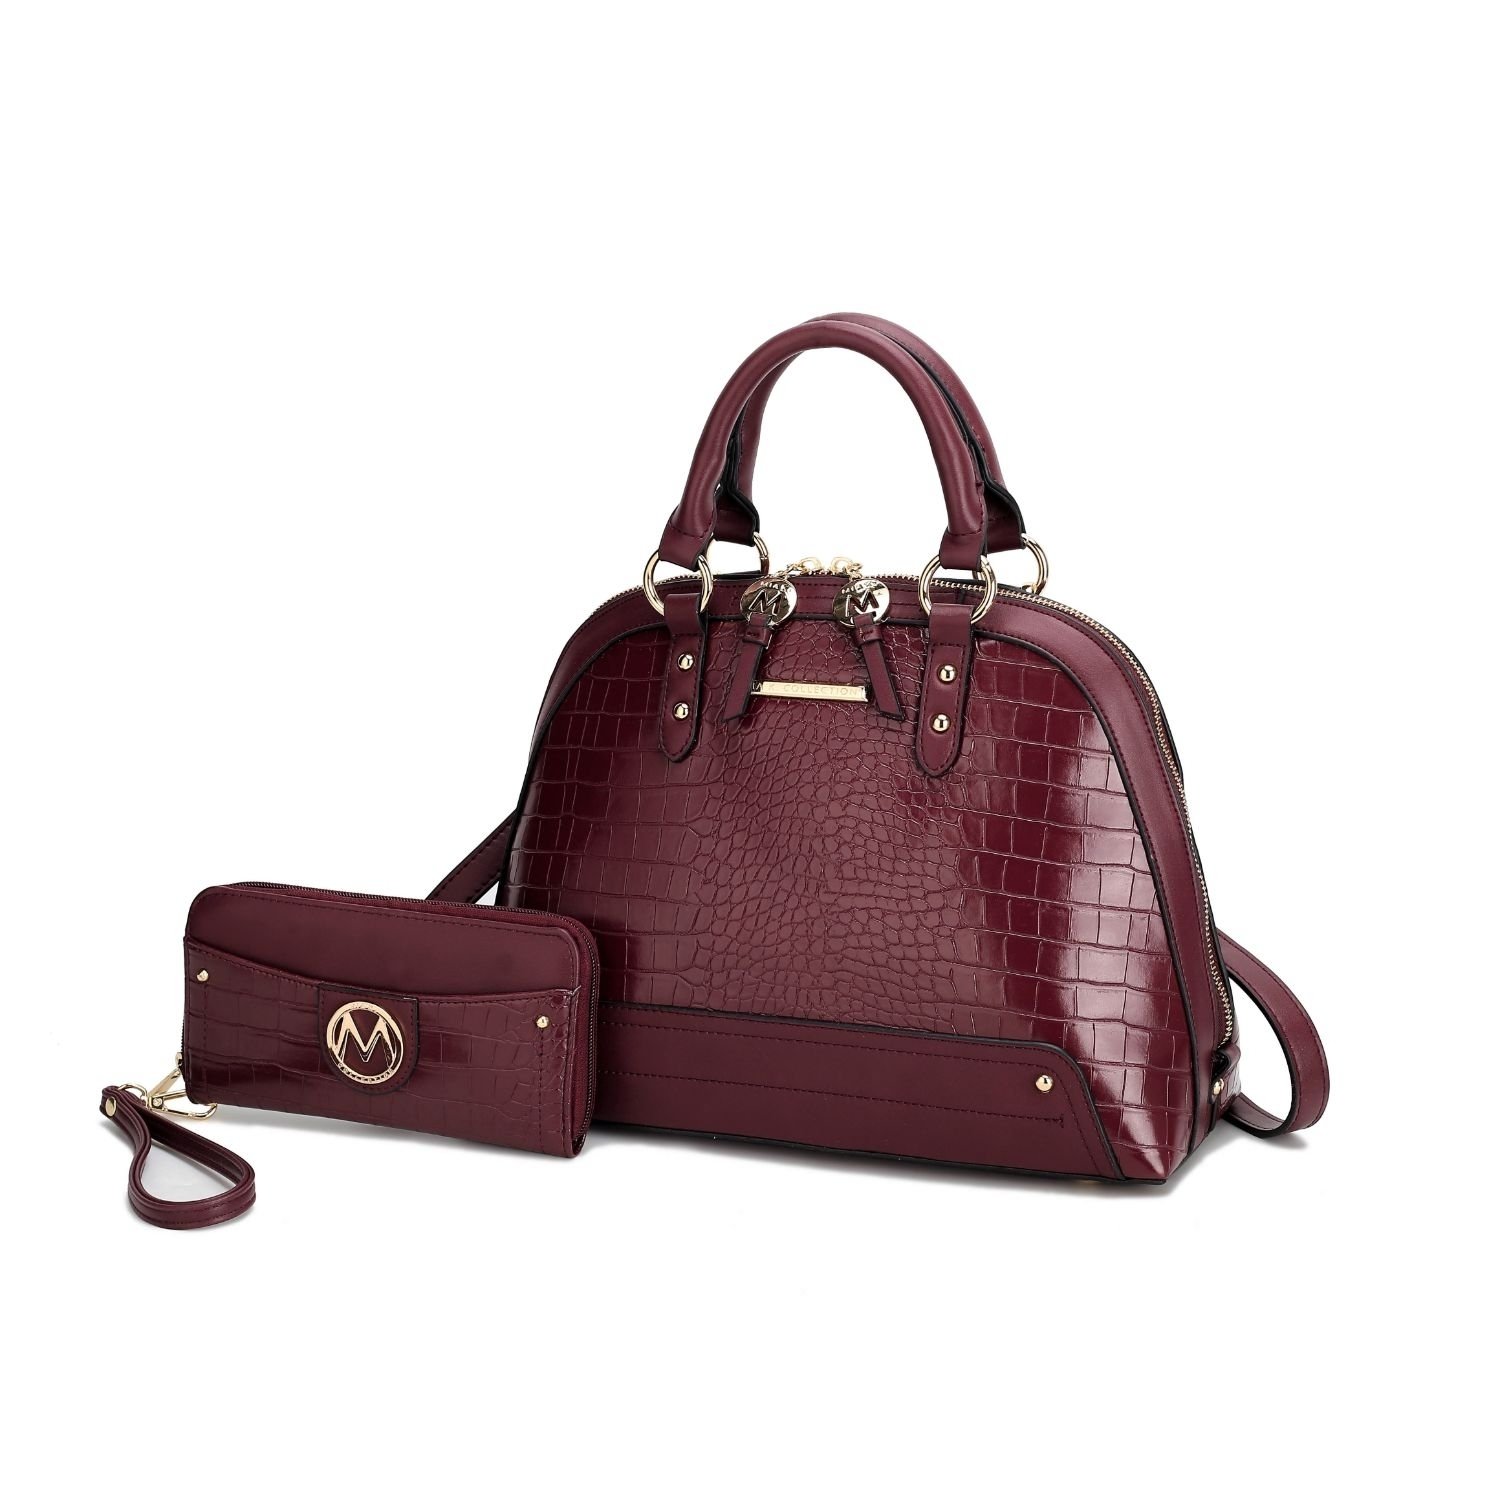 MKF Collection Nora Croco Satchel Handbag By Mia K. - Cognac